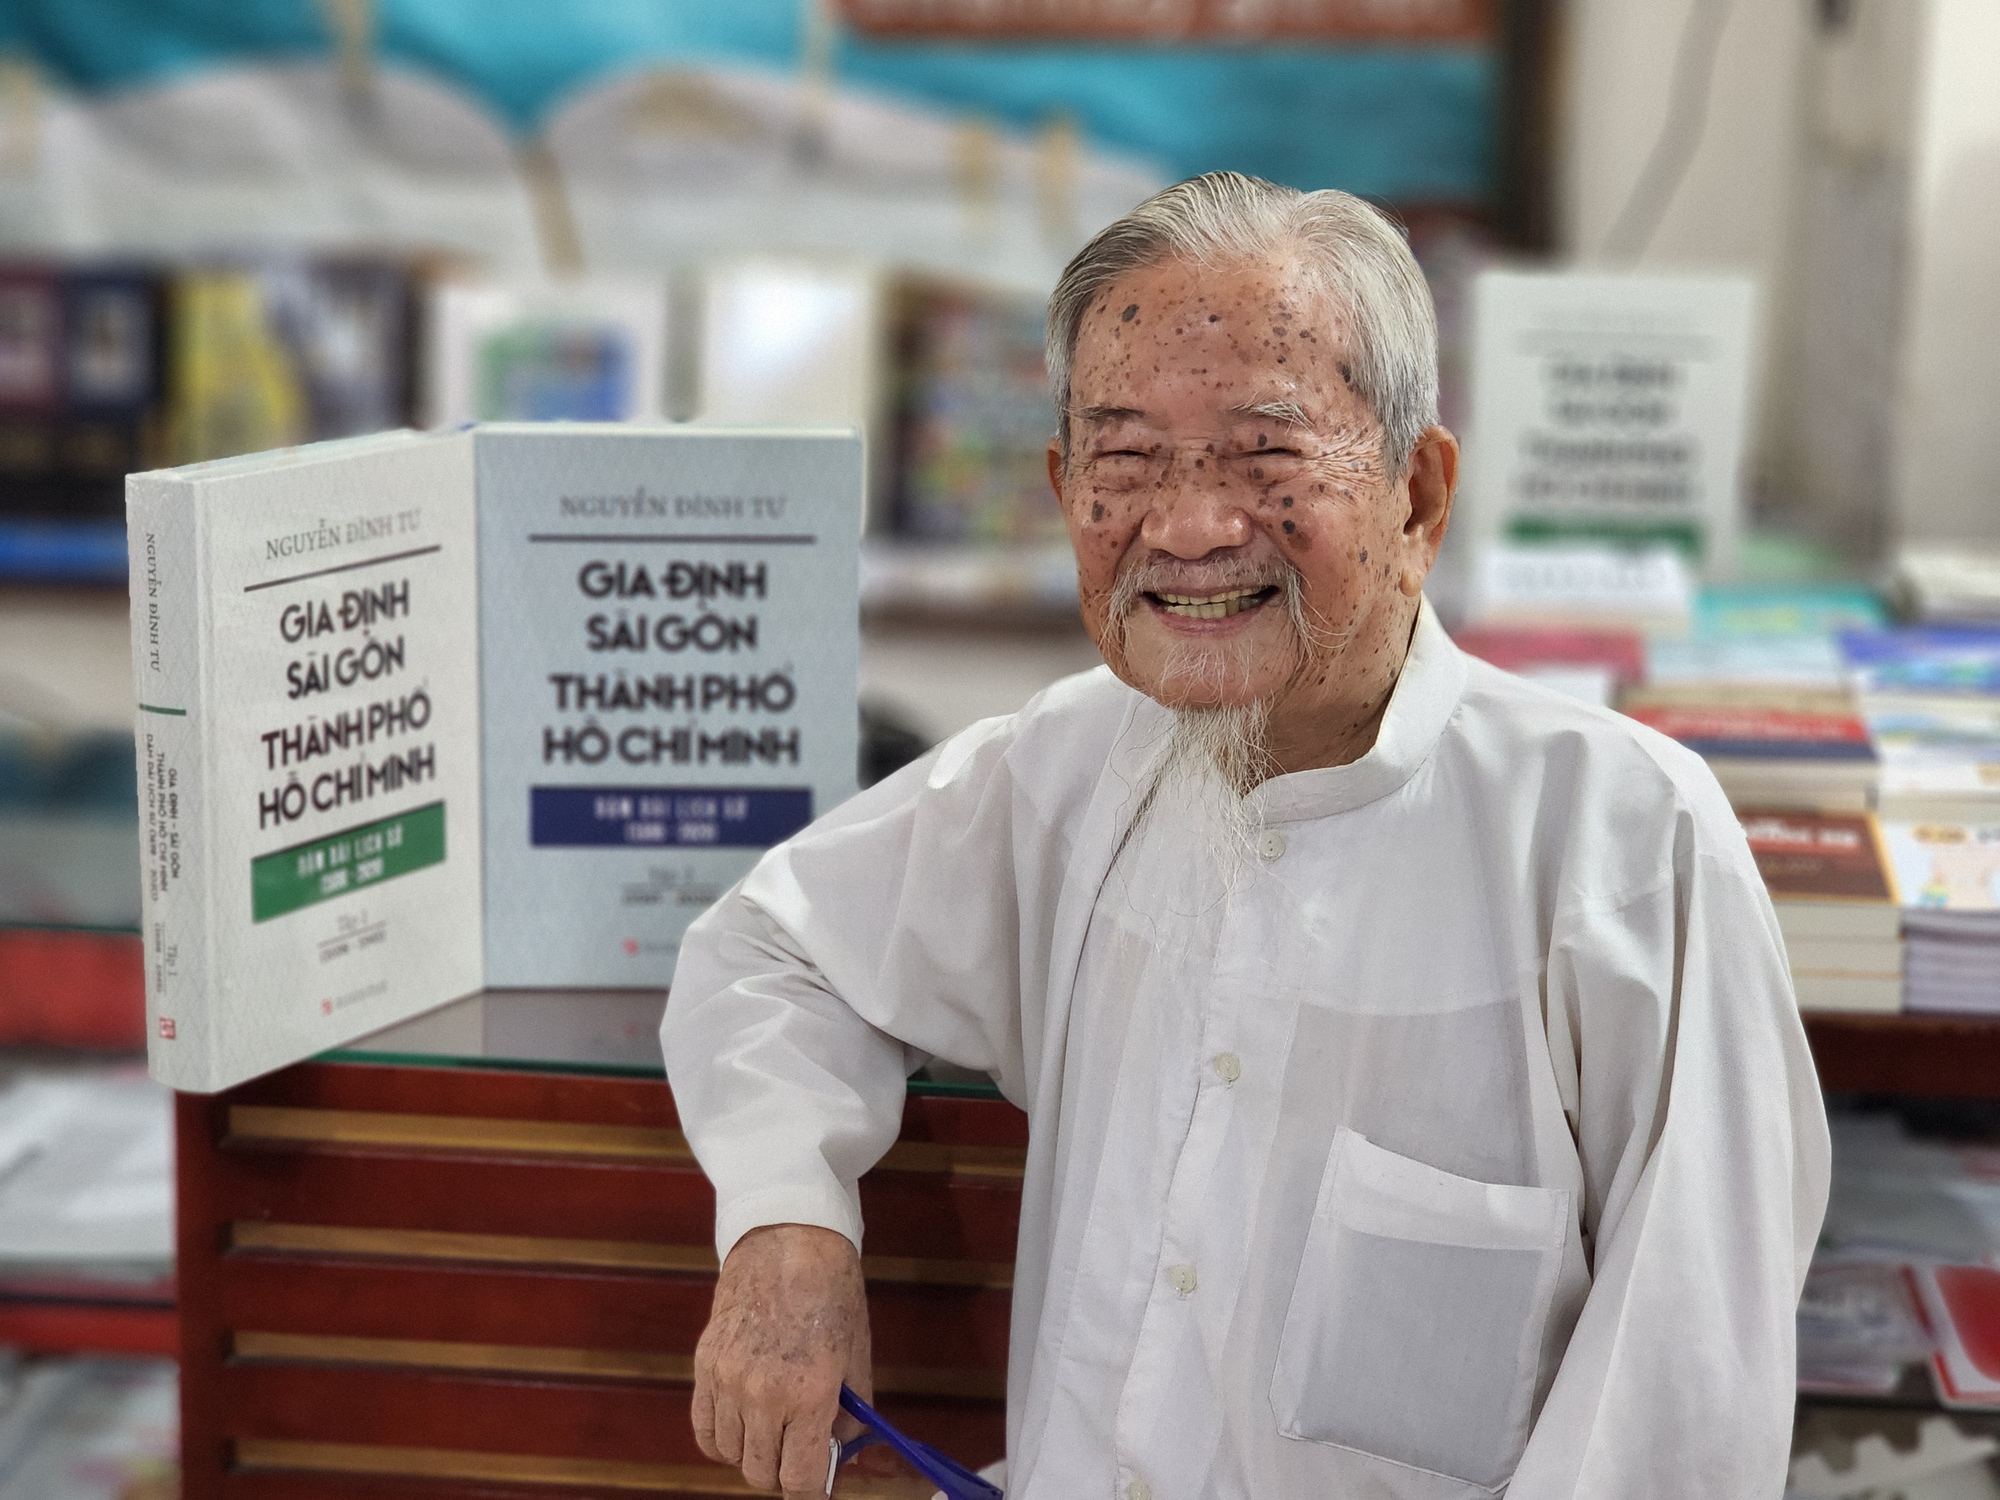 &quot;Gia Định - Sài Gòn - Thành phố Hồ Chí Minh&quot; qua cái nhìn của nhà nghiên cứu 103 tuổi - Ảnh 3.